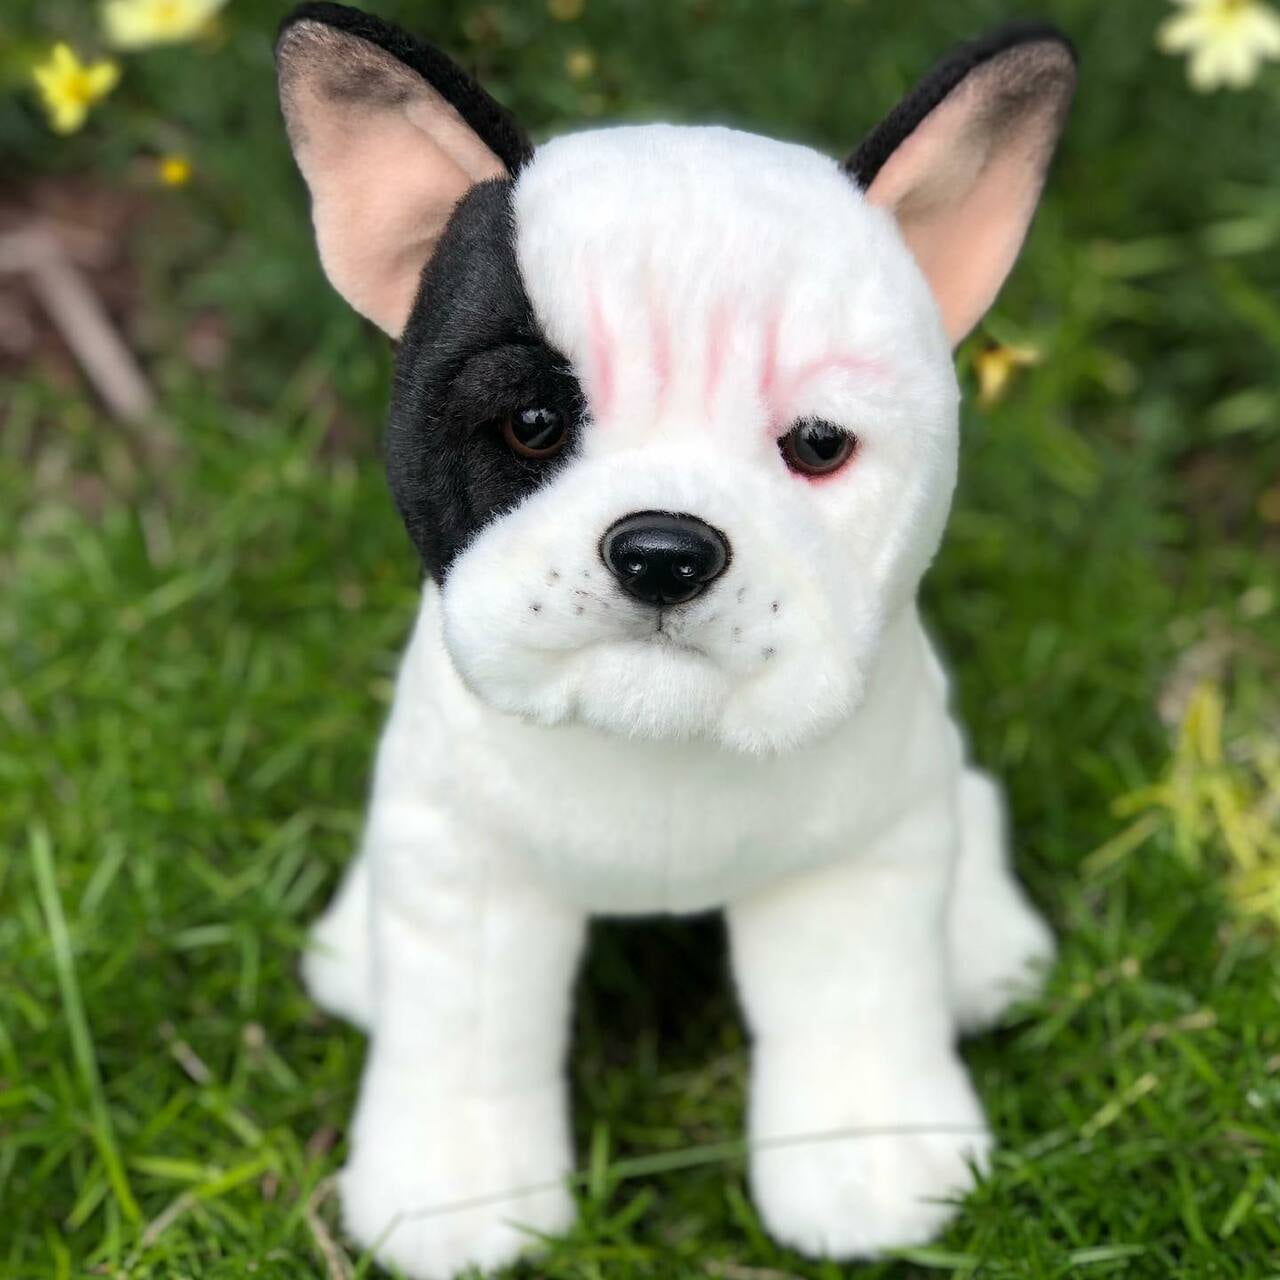 French Bulldog Stuffed Animal Black Dog Cute Soft Cuddly Toy Realistic Plush 